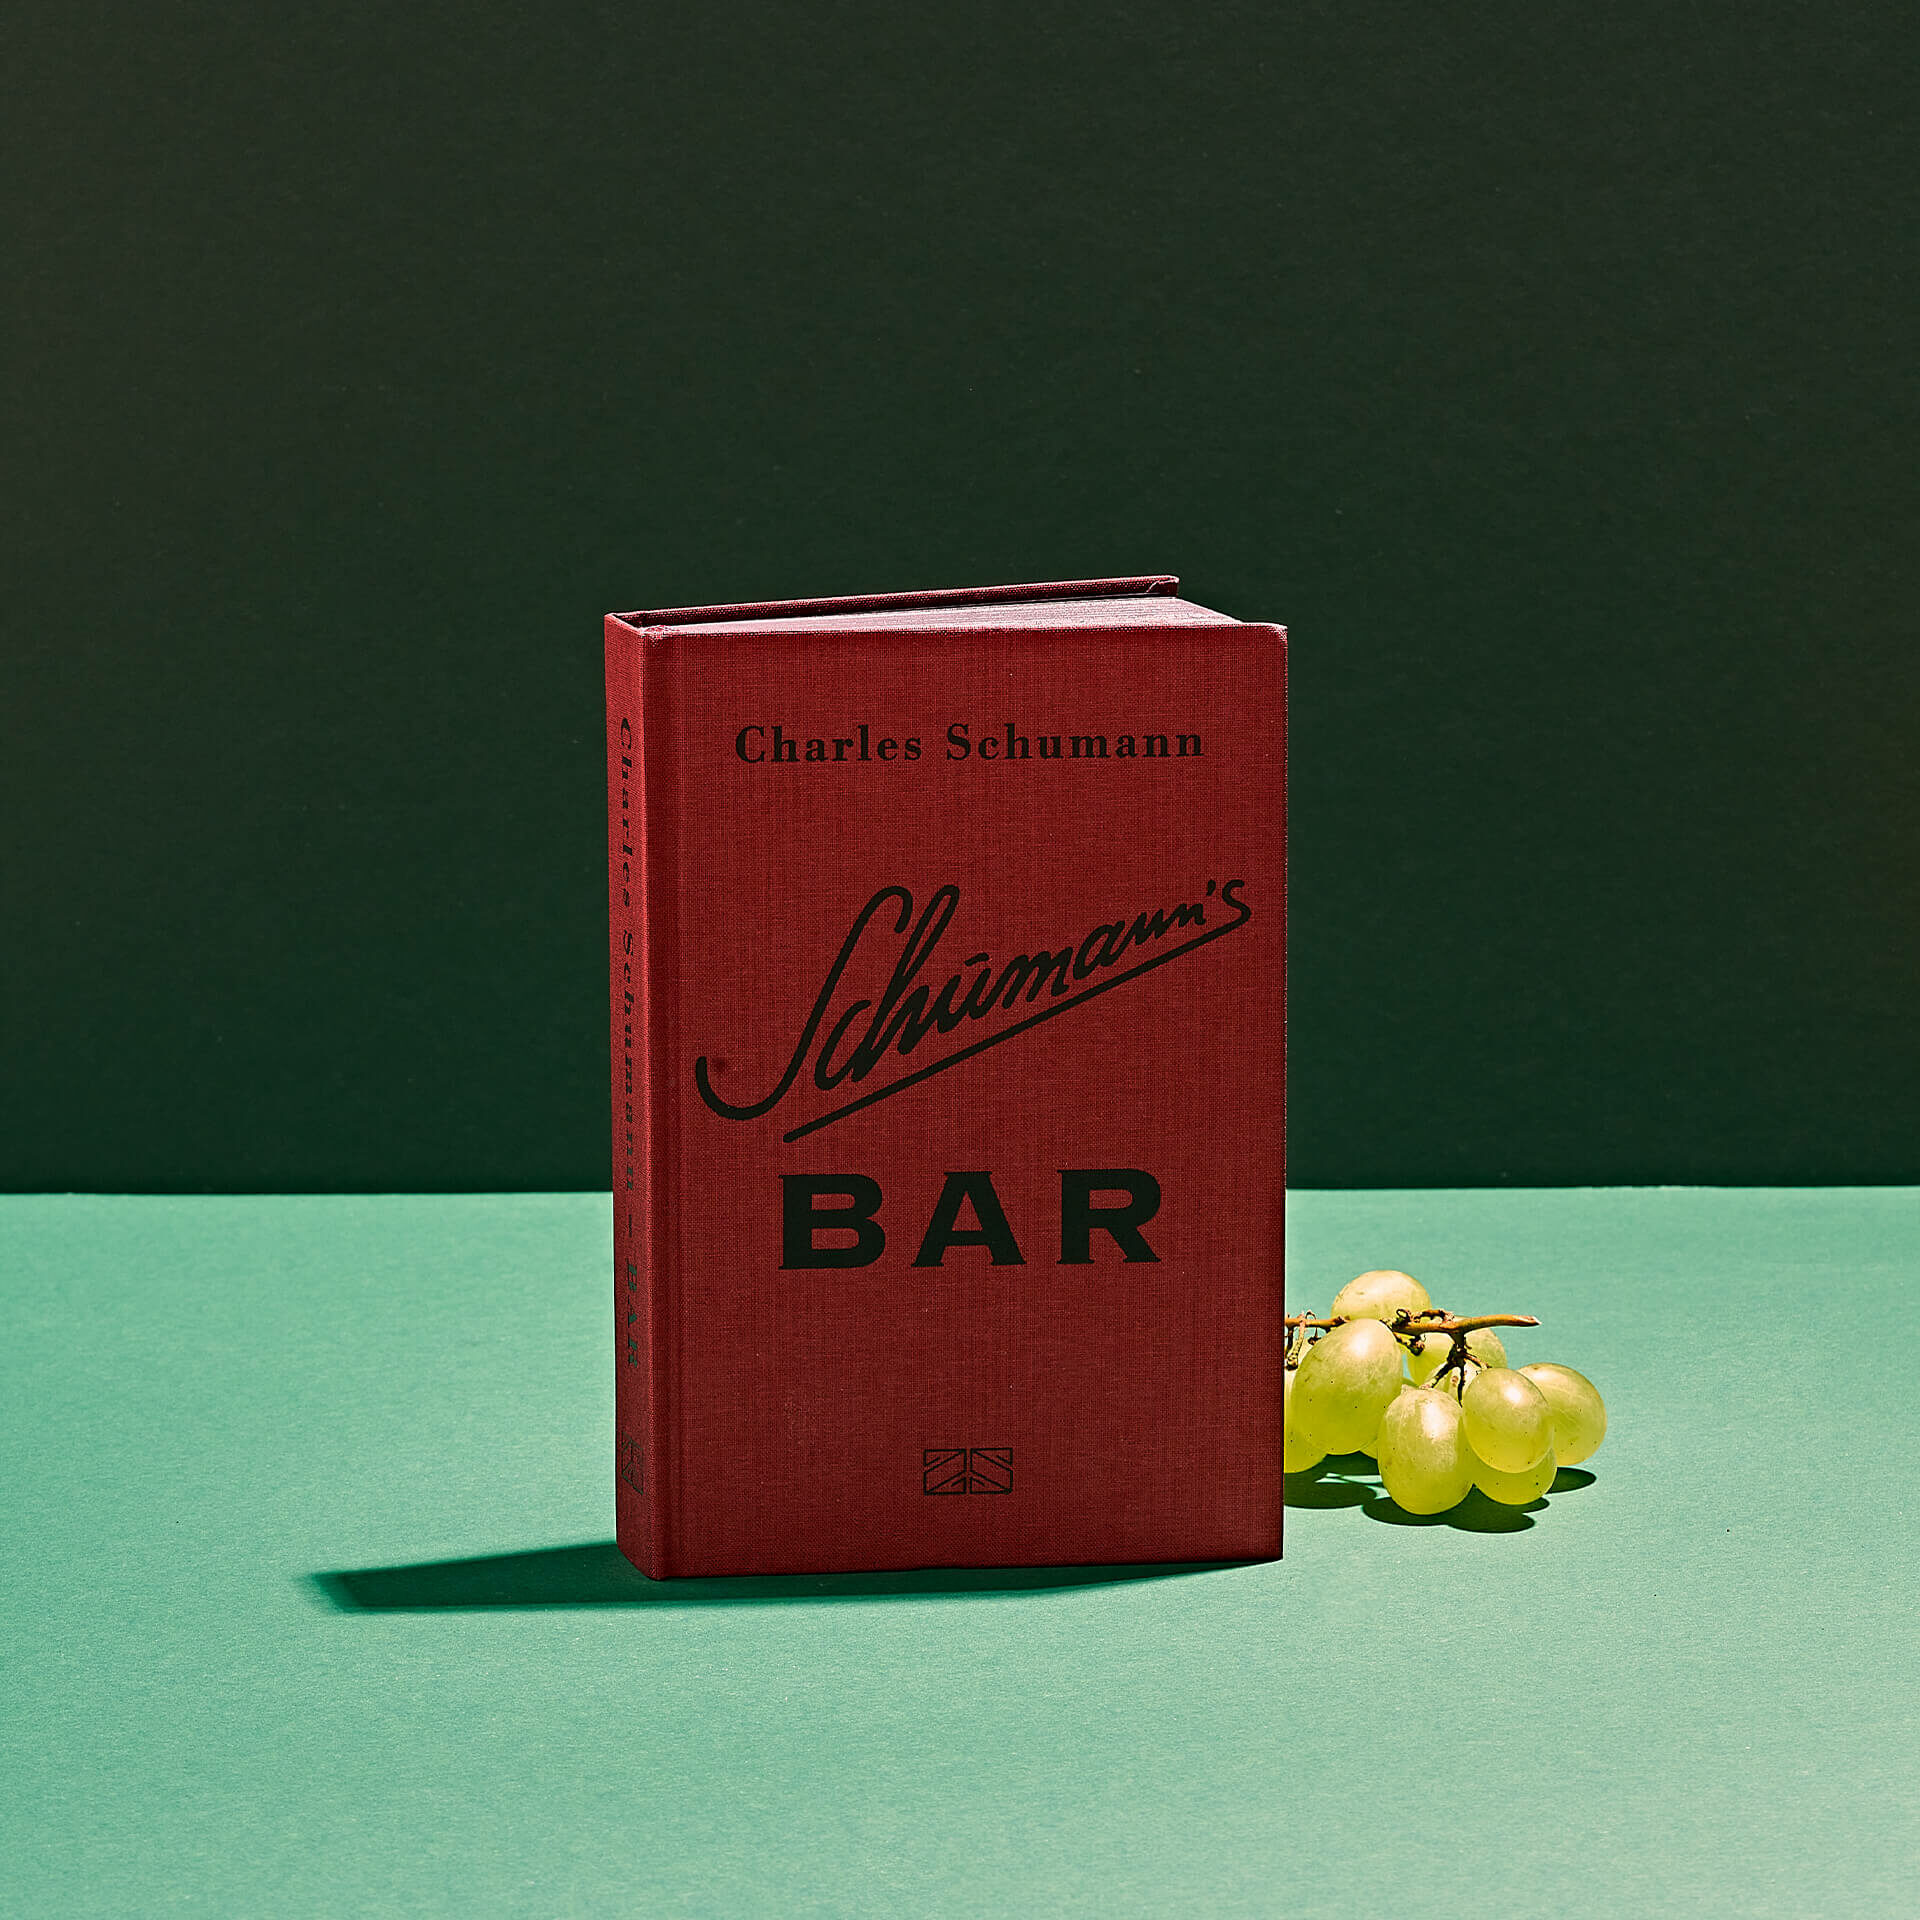 Schumann's Bar von Charles Schumann - Cocktail Bücher bei Drink Syndikat